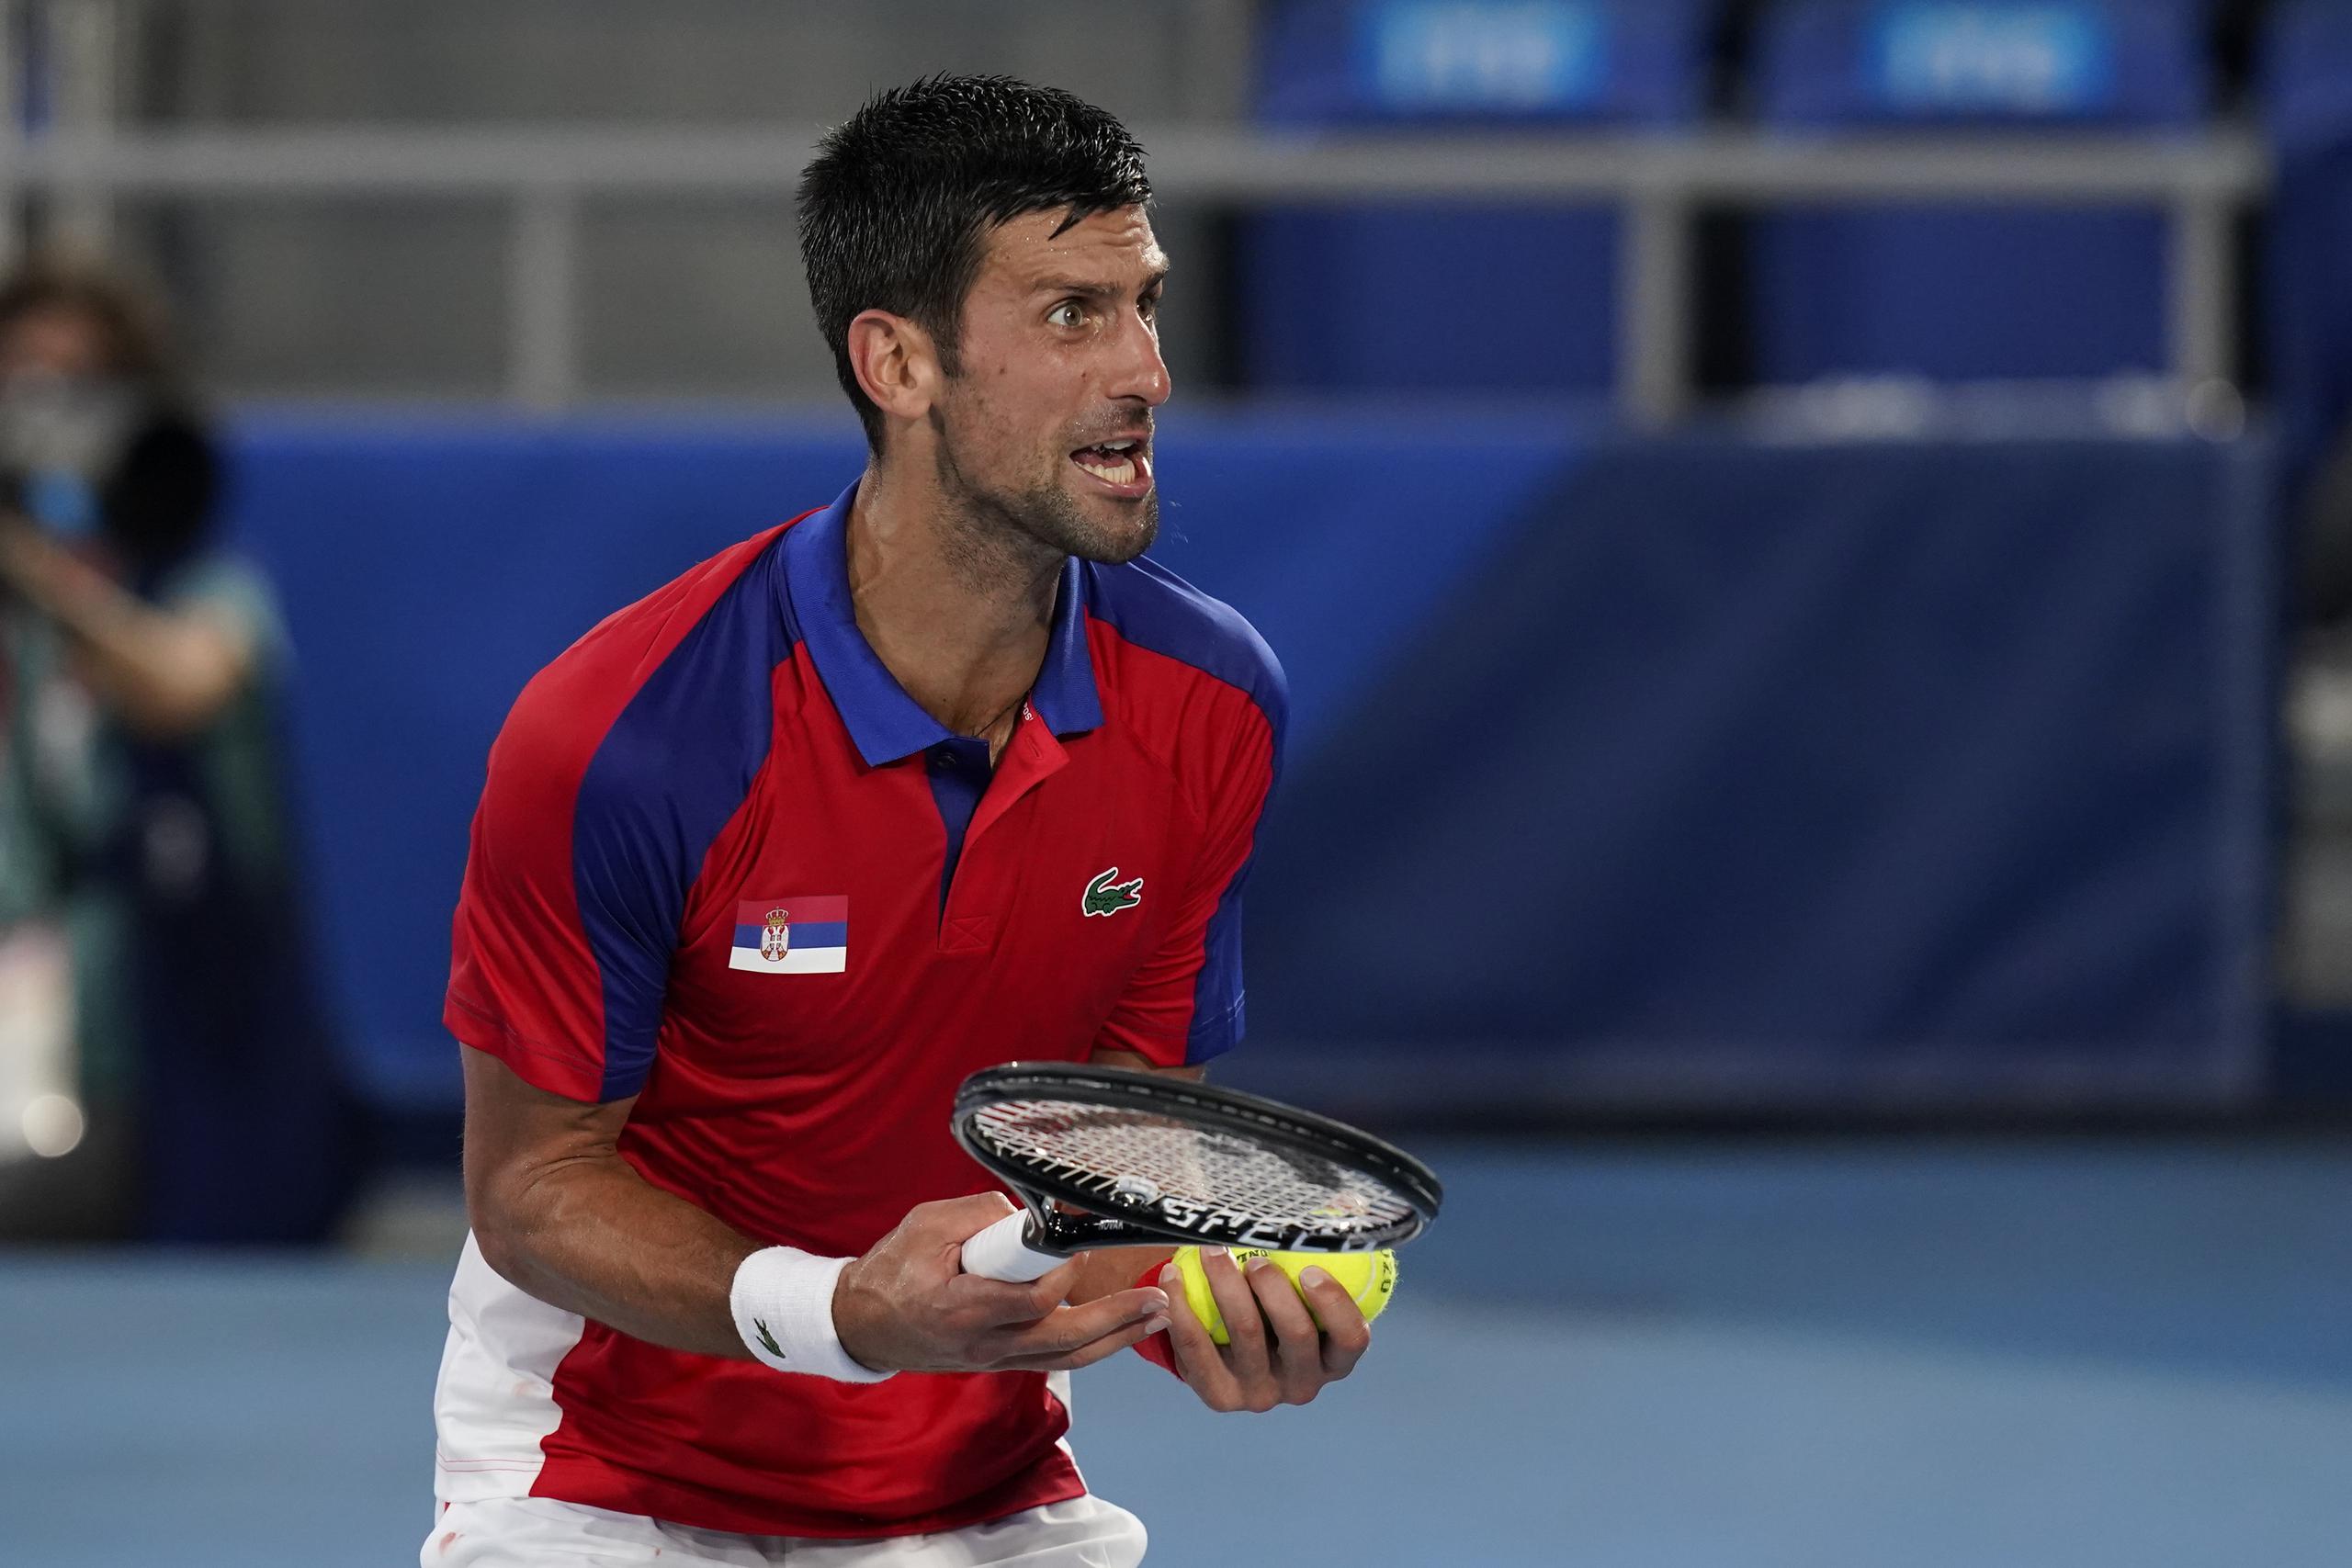 El serbio Novak Djokovic reacciona durante su partido contra el alemán Alexander Zverev por las semifinales del tenis de los Juegos Olímpicos de Tokio.